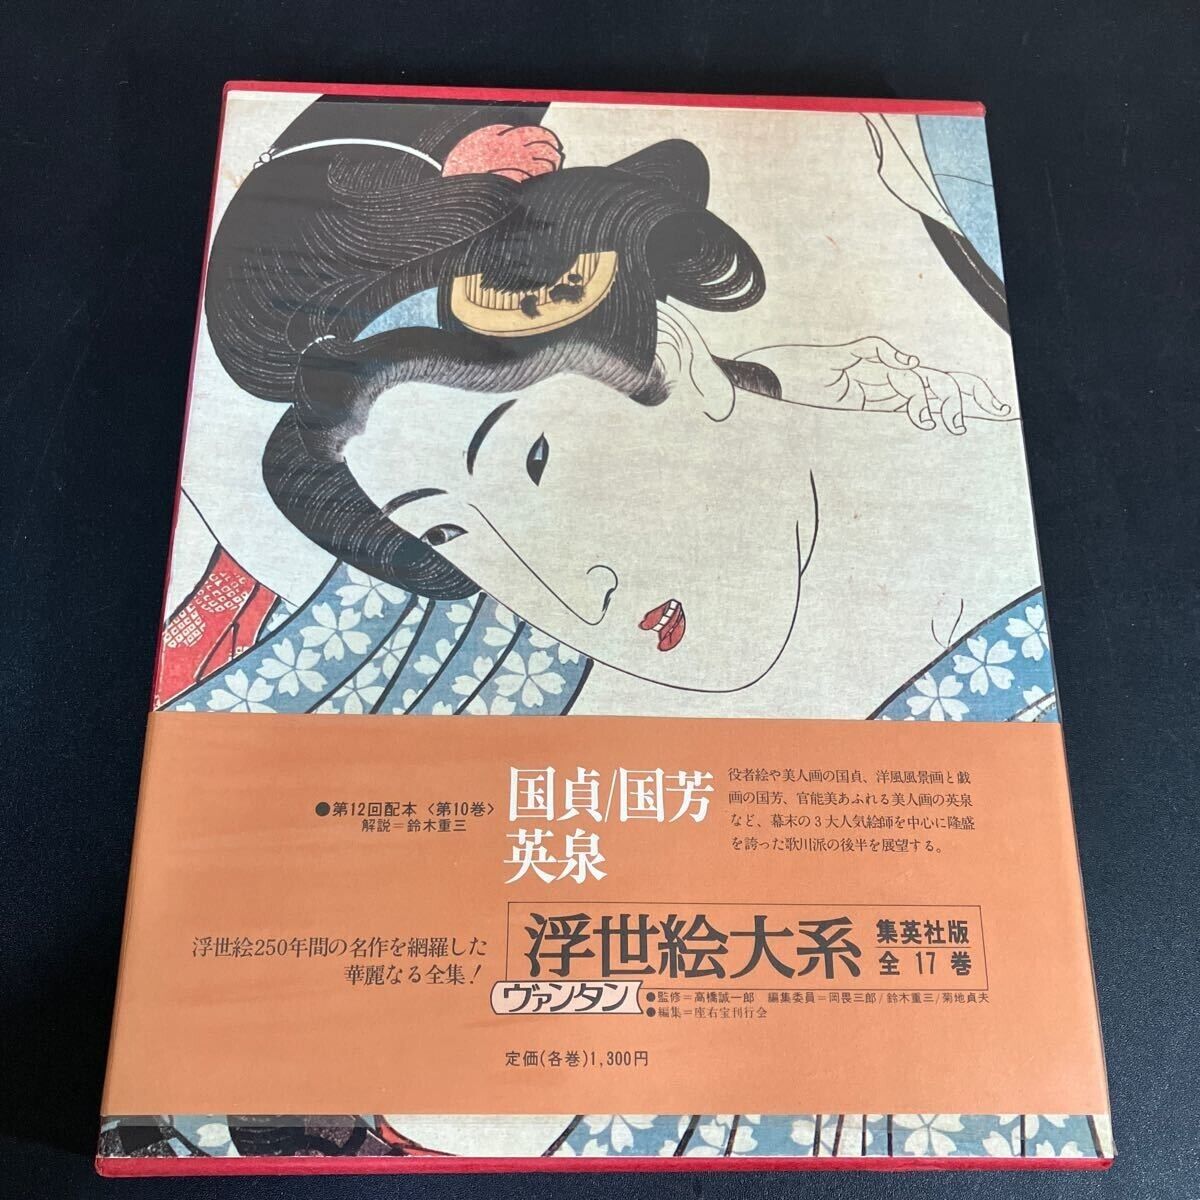 Kunisada/Kuniyoshi/Eisen Ukiyo-e Ukiyo-e compendium No.10 1974 Art Works Irezumi